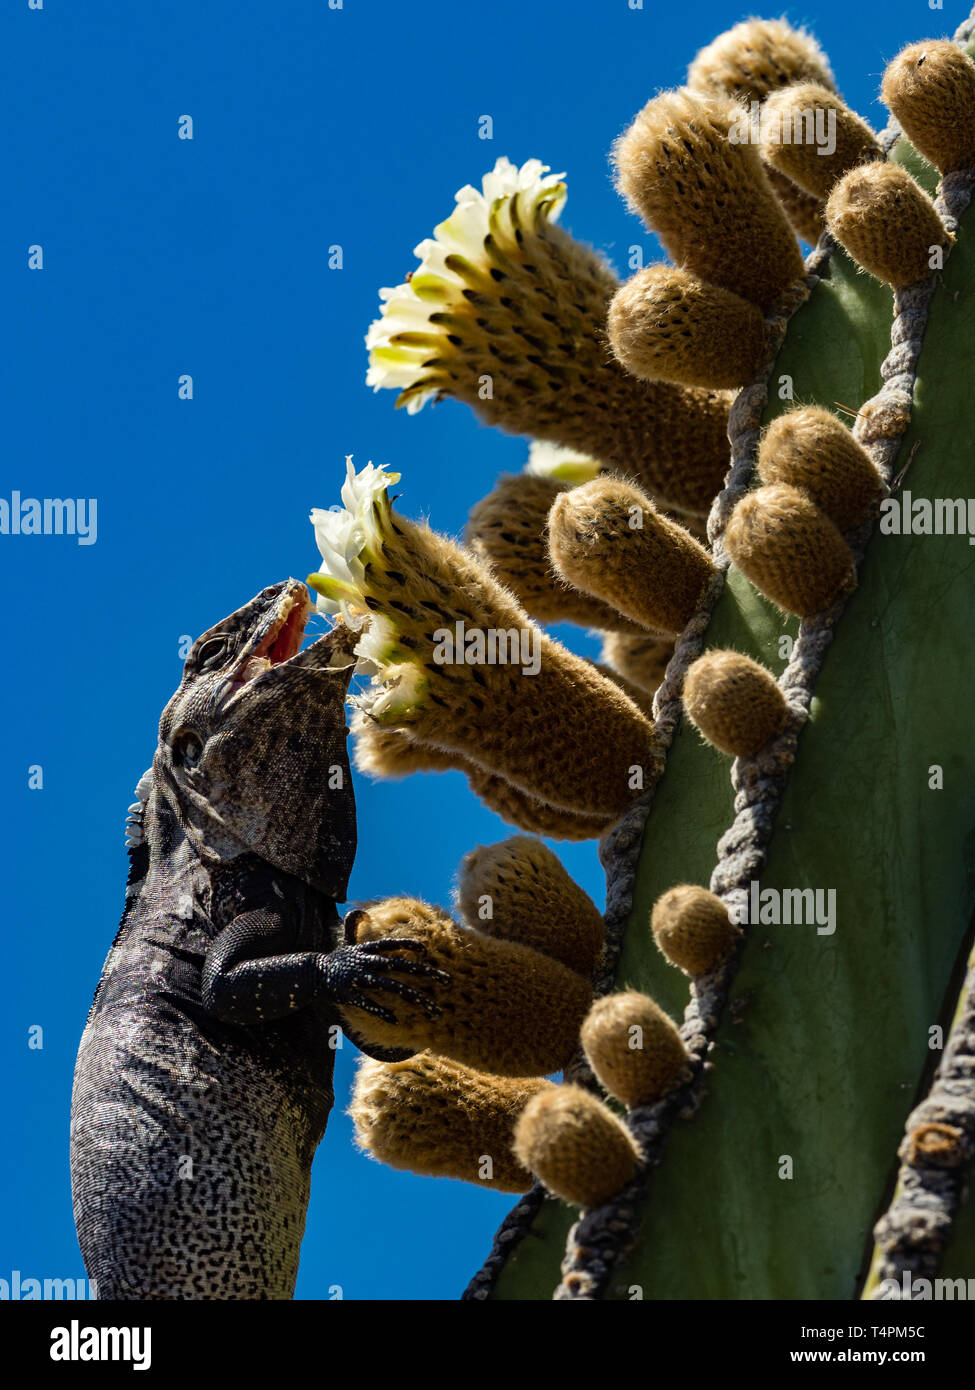 San Esteban Island Spiny-tailed Iguana, Ctenosaura conspicuosa, climbing a cardon cactus in Baja California, Mexico Stock Photo